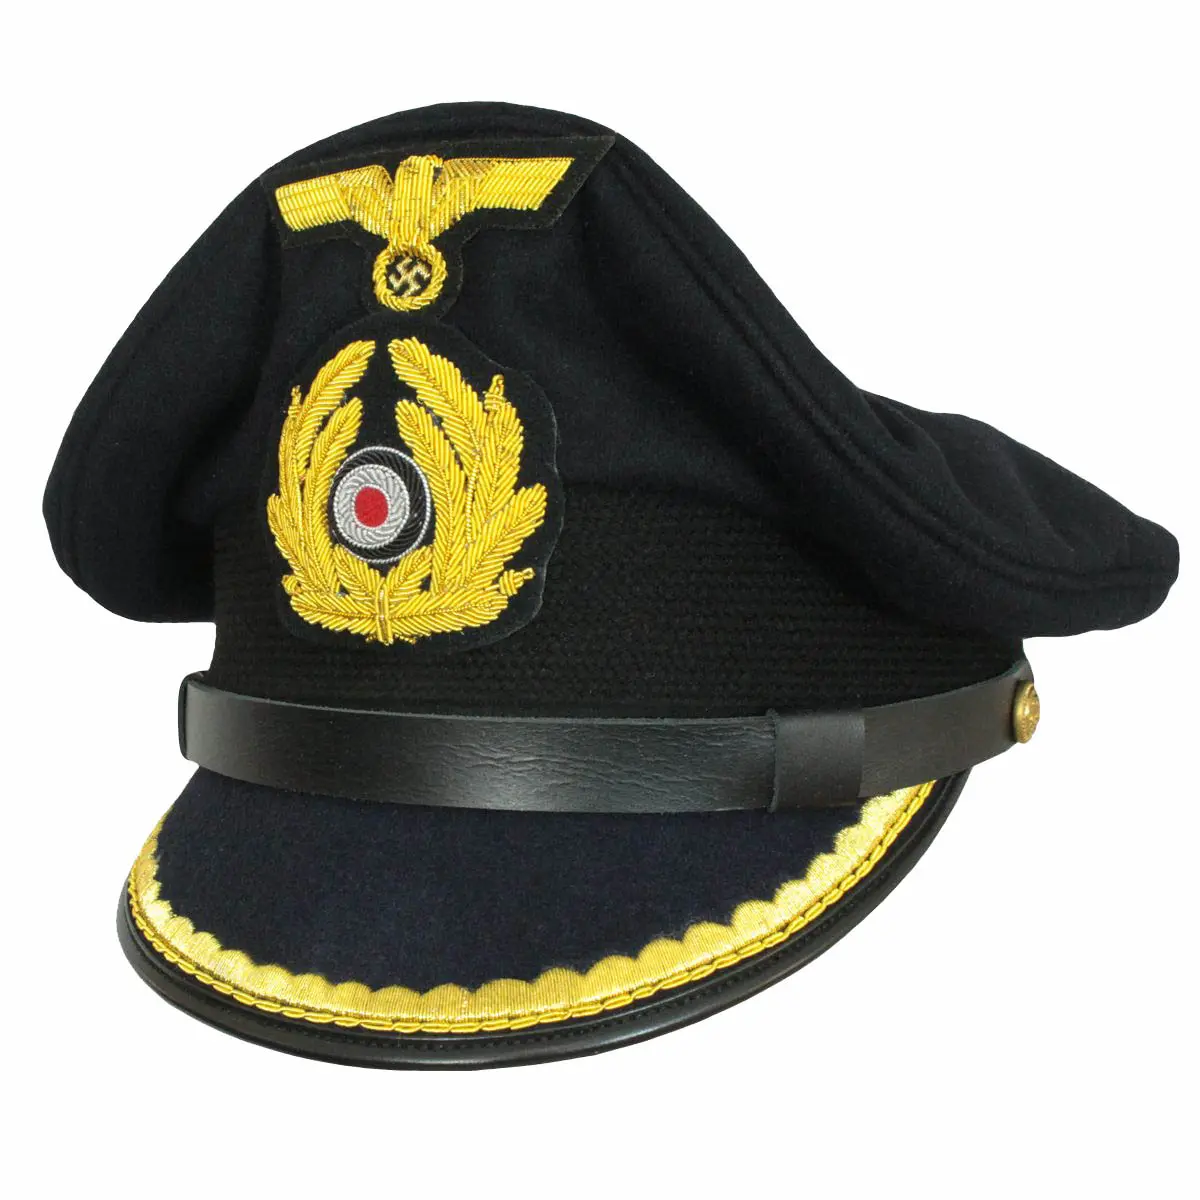 หมวกบังคับหน้าทหาร Kriegsmarine เยอรมัน WW2 พร้อมประกาศเกียรติยศและเครื่องราชอิสริยาภรณ์ Kriegsmarine บริษัท เกรดเจ้าหน้าที่หมวกบังคับหน้า